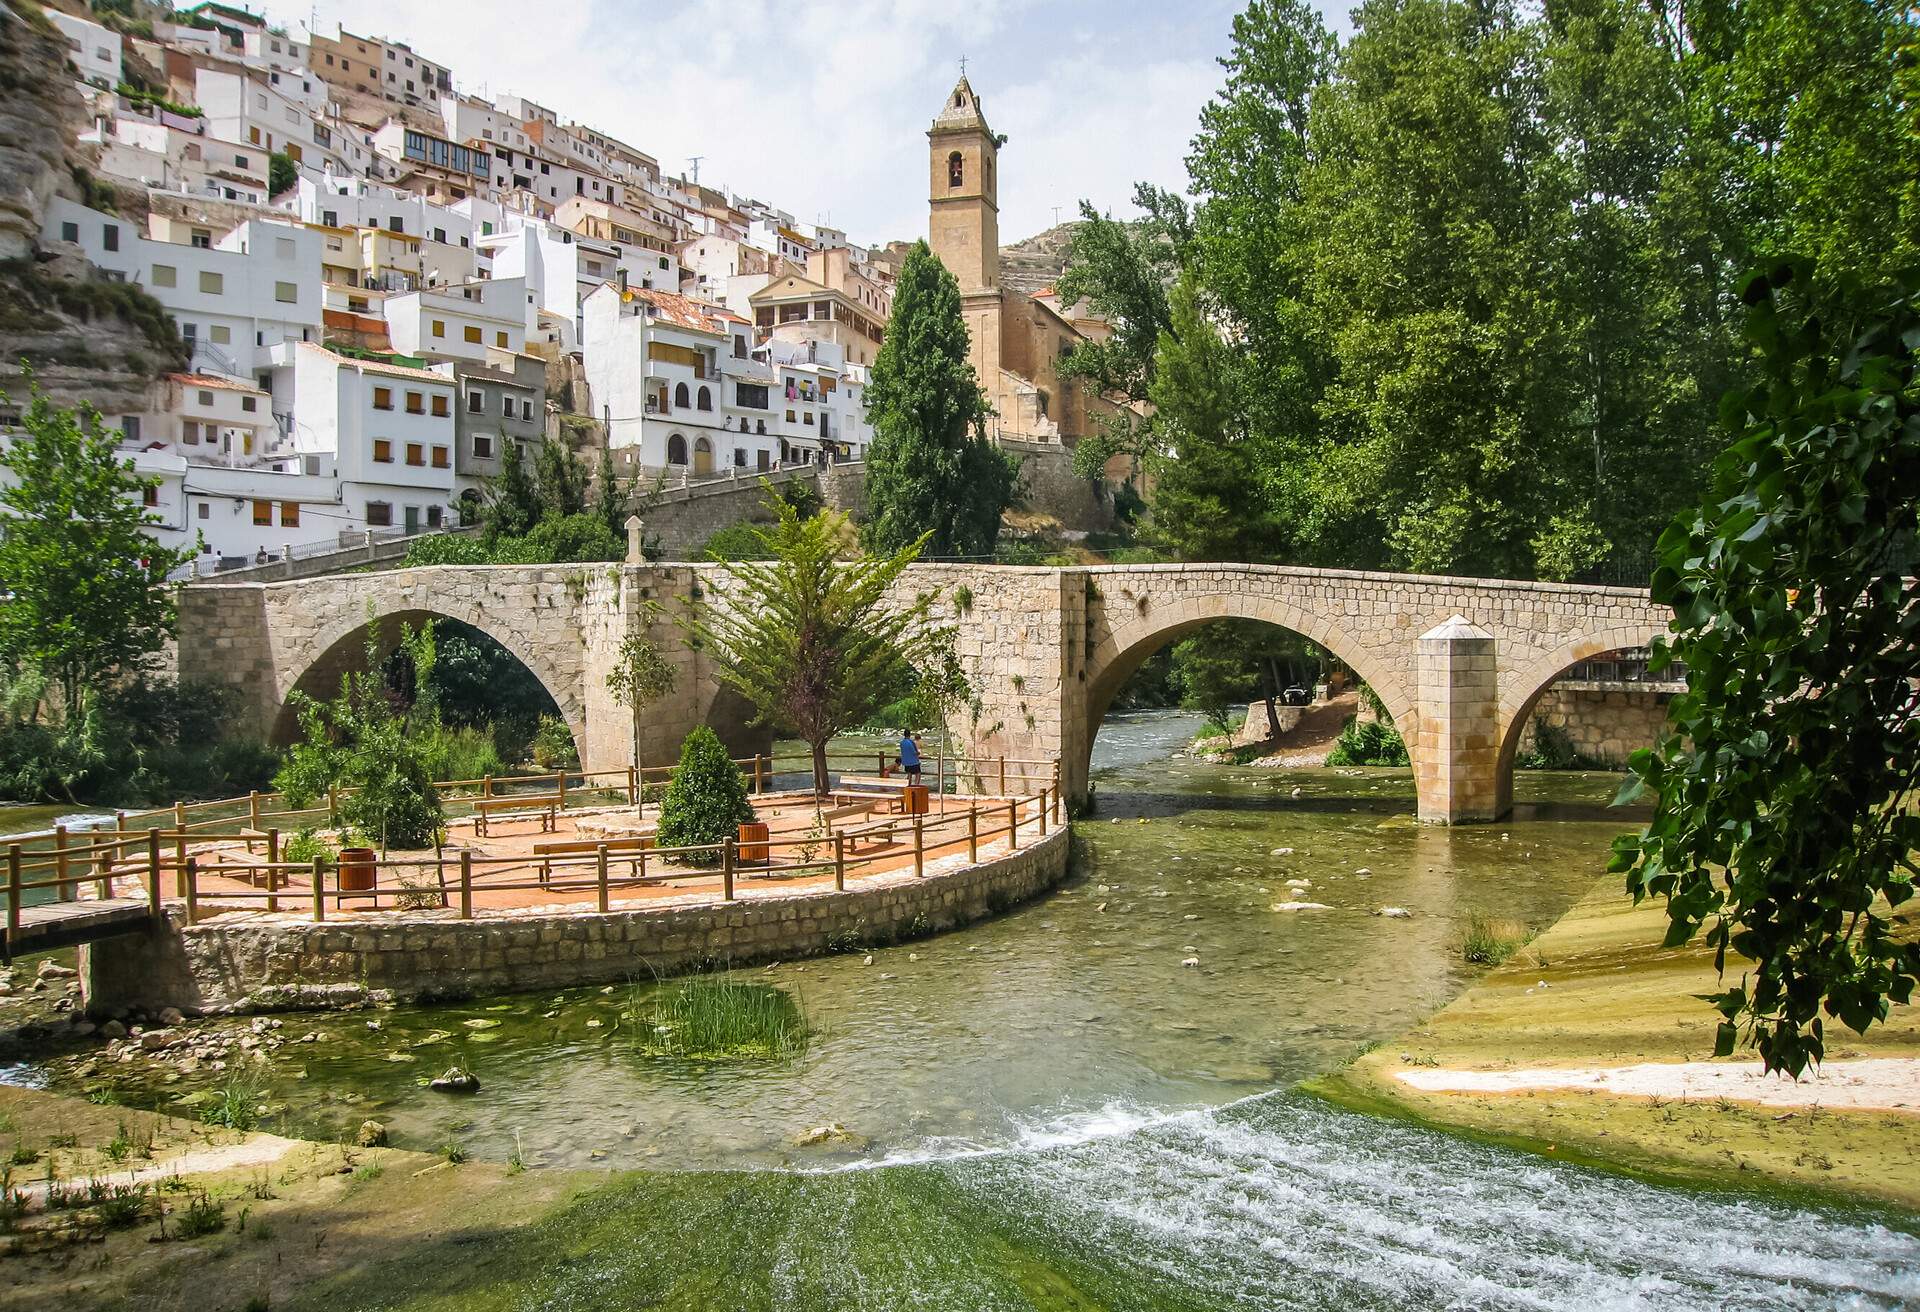 Cityscape with bridge over river at Alcala del Jucar in Castilla la Mancha, Spain